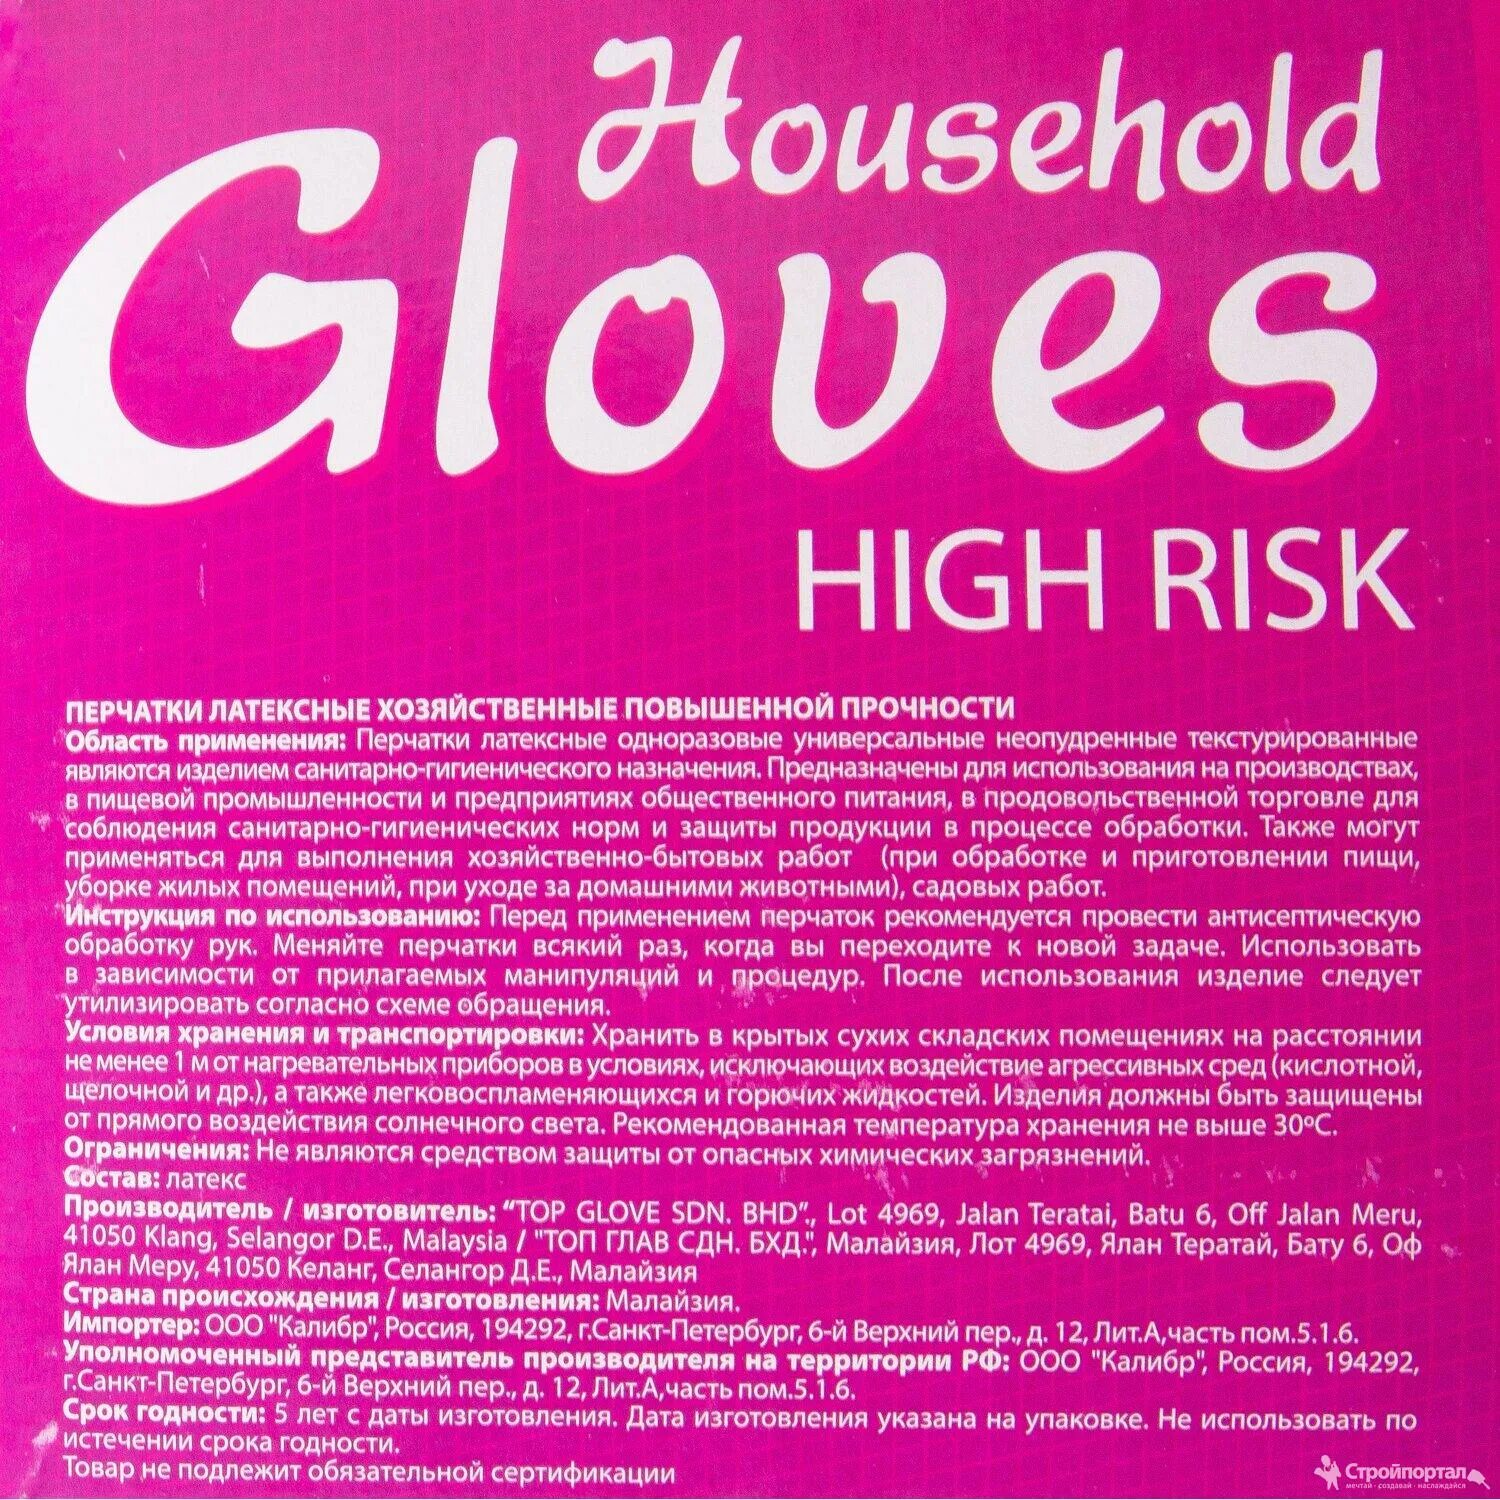 High risk. Перчатки латексные household Gloves High risk khr003 m, синие 250/25. Перчатки household Gloves High risk. Перчатки латексные household Gloves High risk повышенной прочности. Перчатки household Gloves хозяйственные латексные High risk, синие купить СПБ.